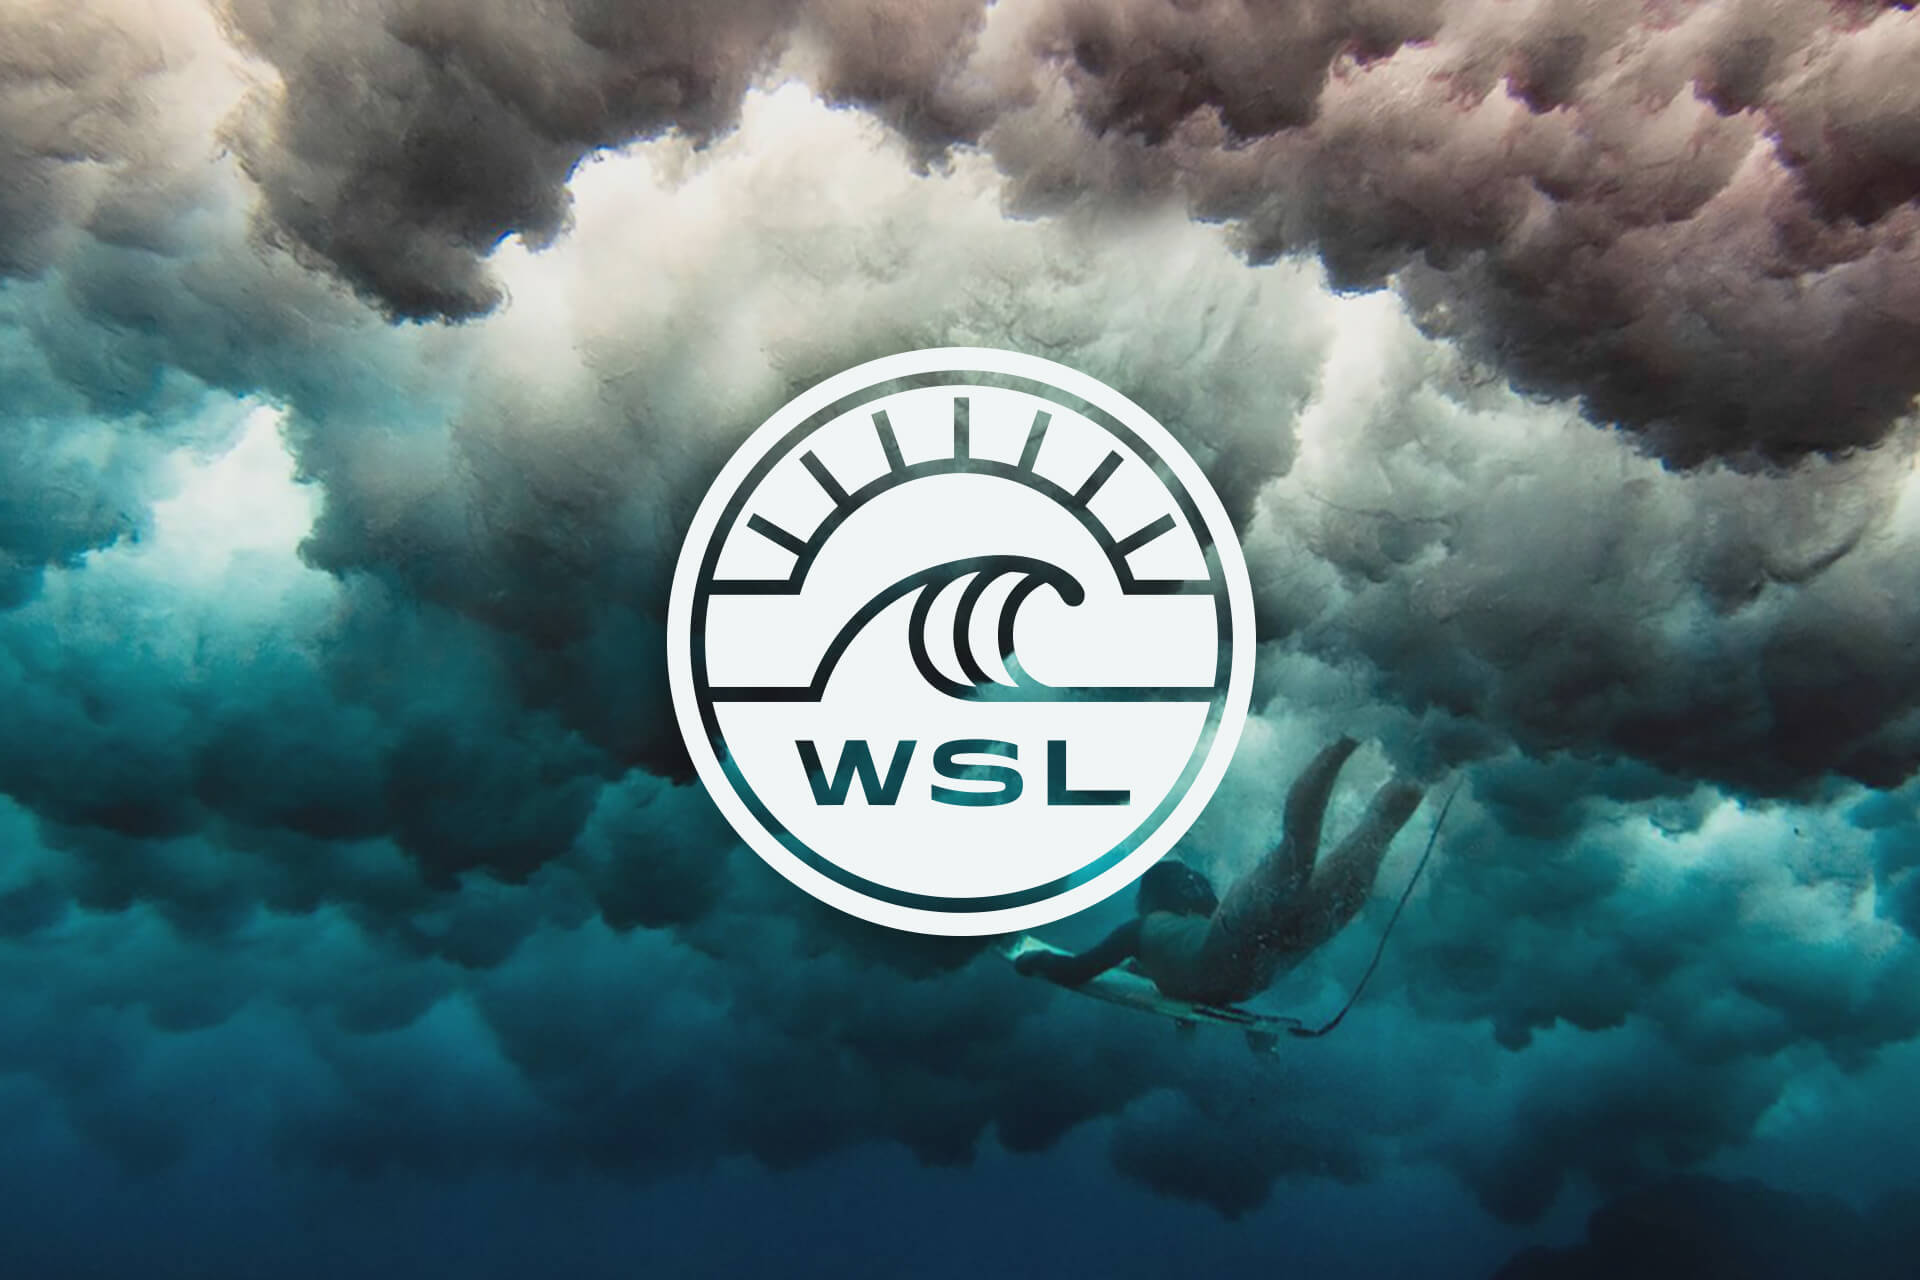 WSL Hawaii Events Schedule 2016 - Freesurf Magazine